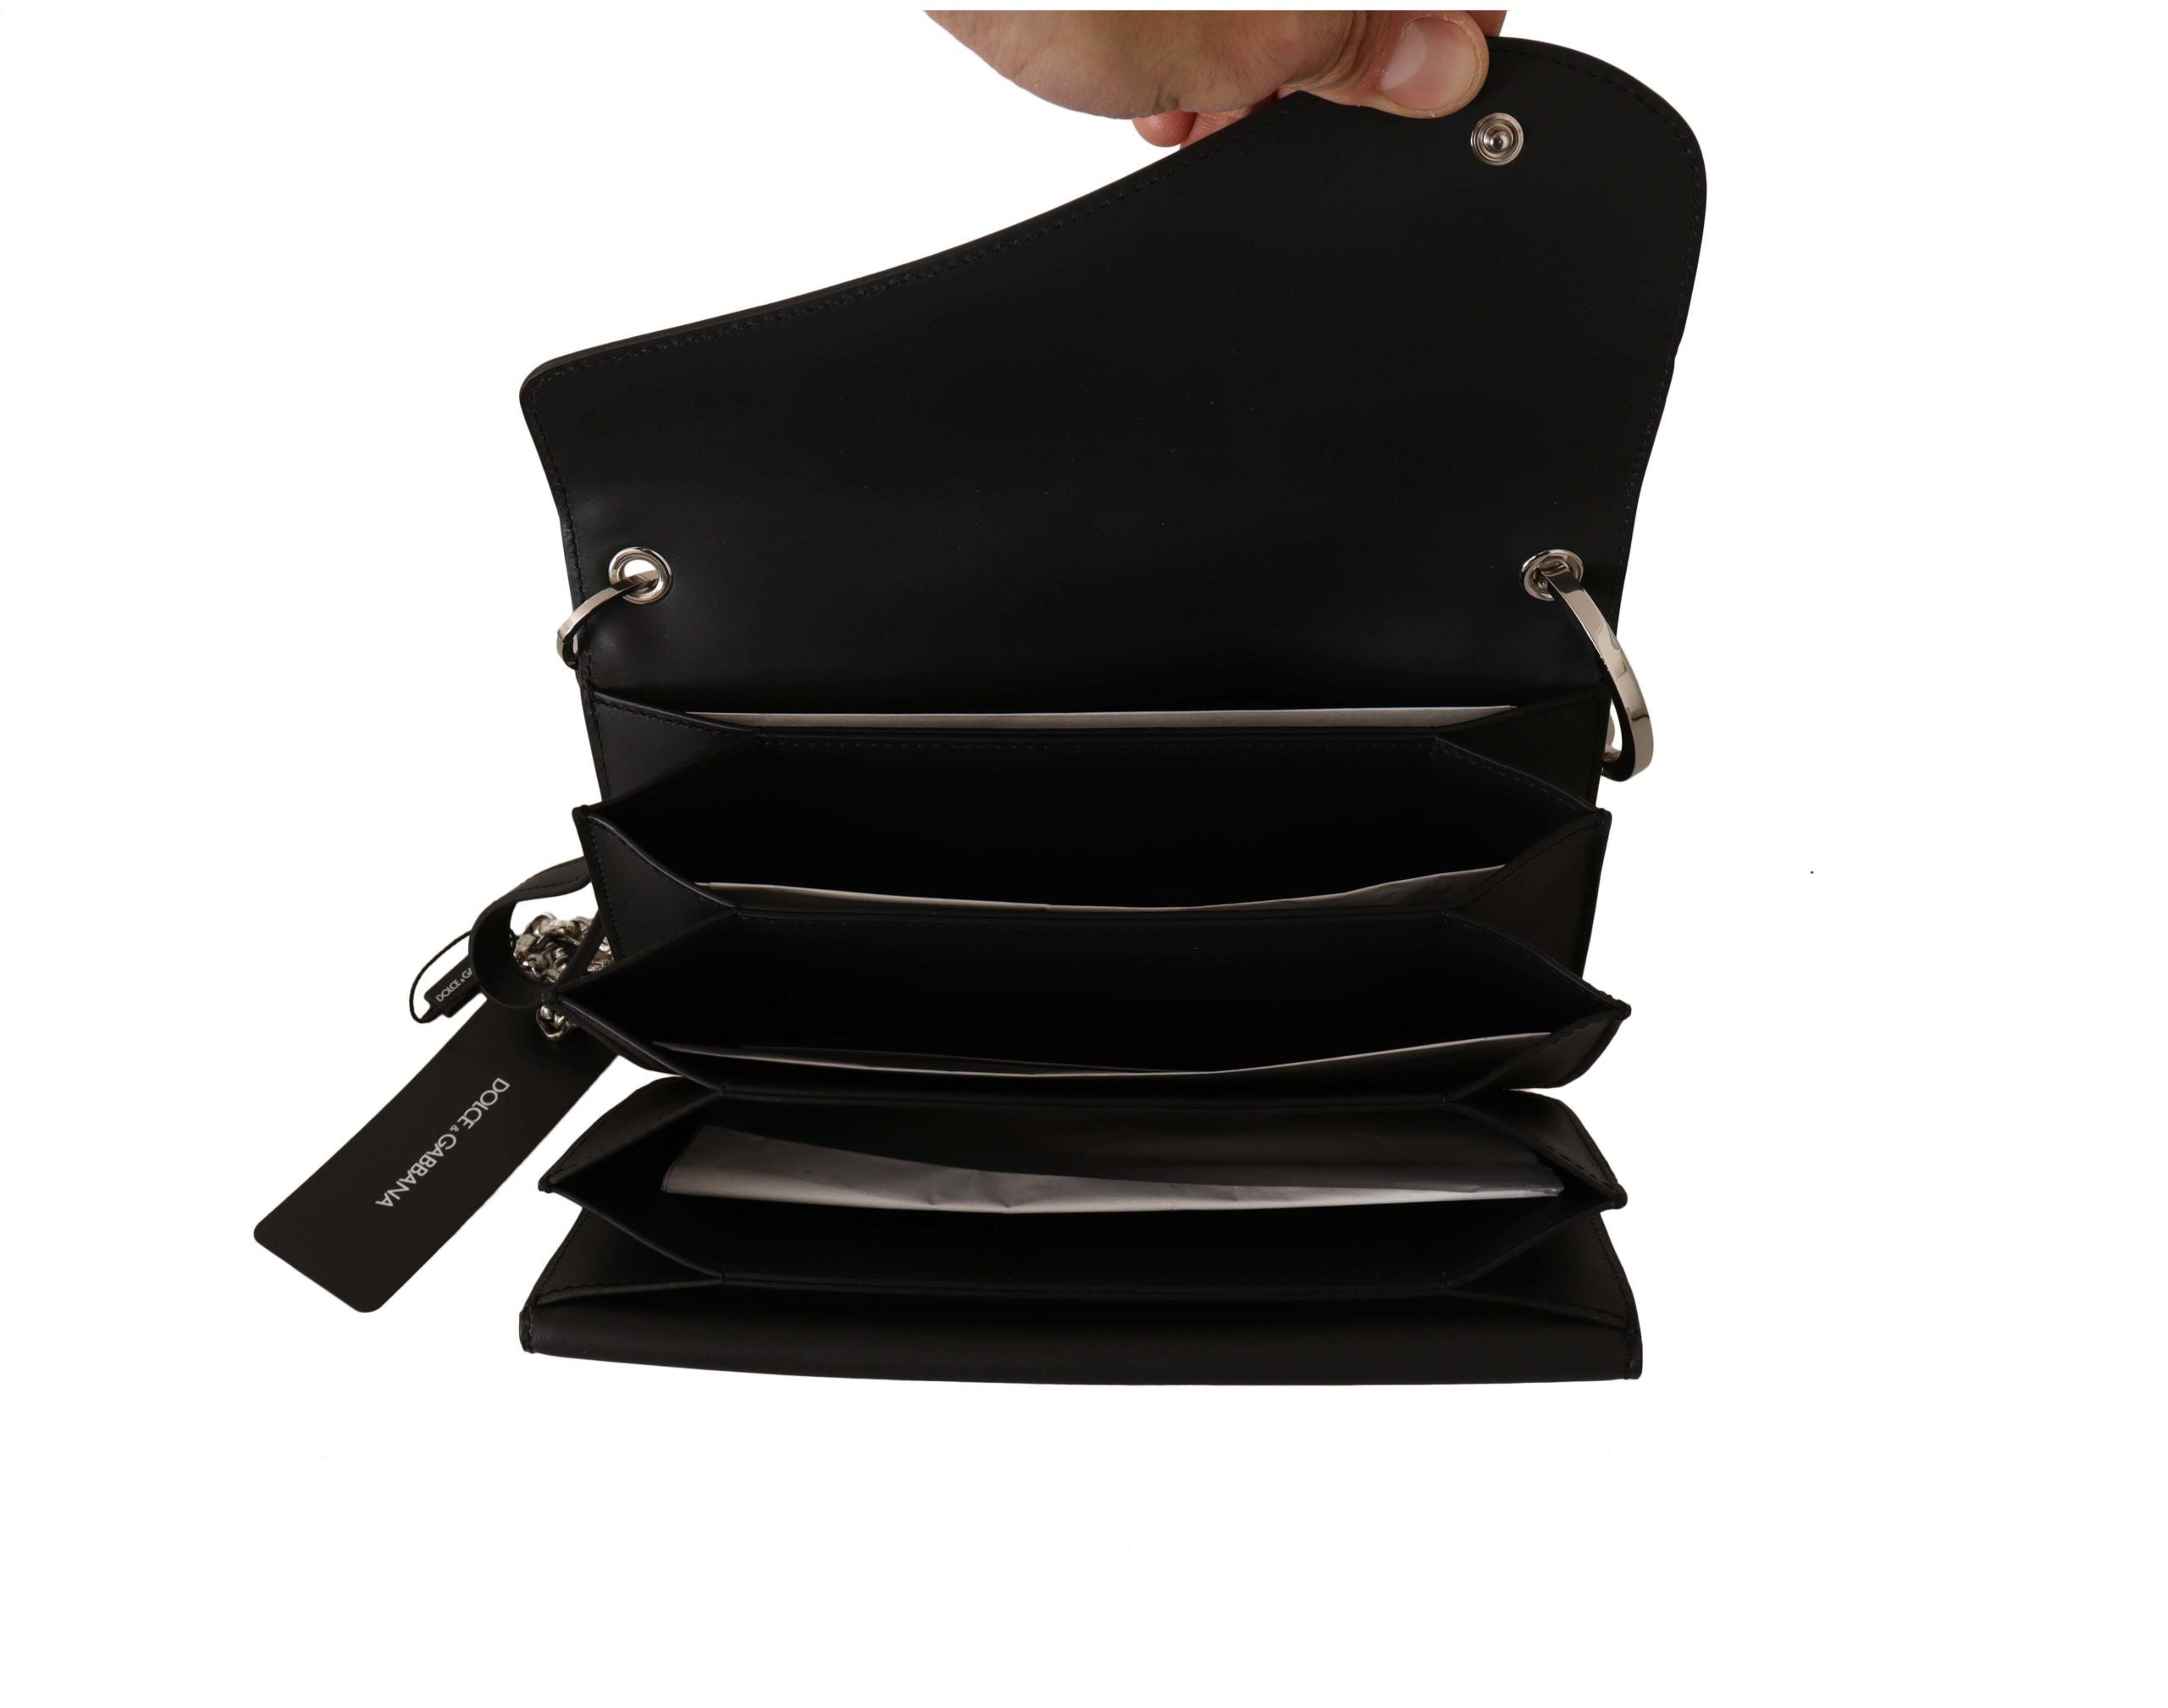 Dolce & Gabbana Elegant Black Leather Shoulder Bag with Silver Detailing